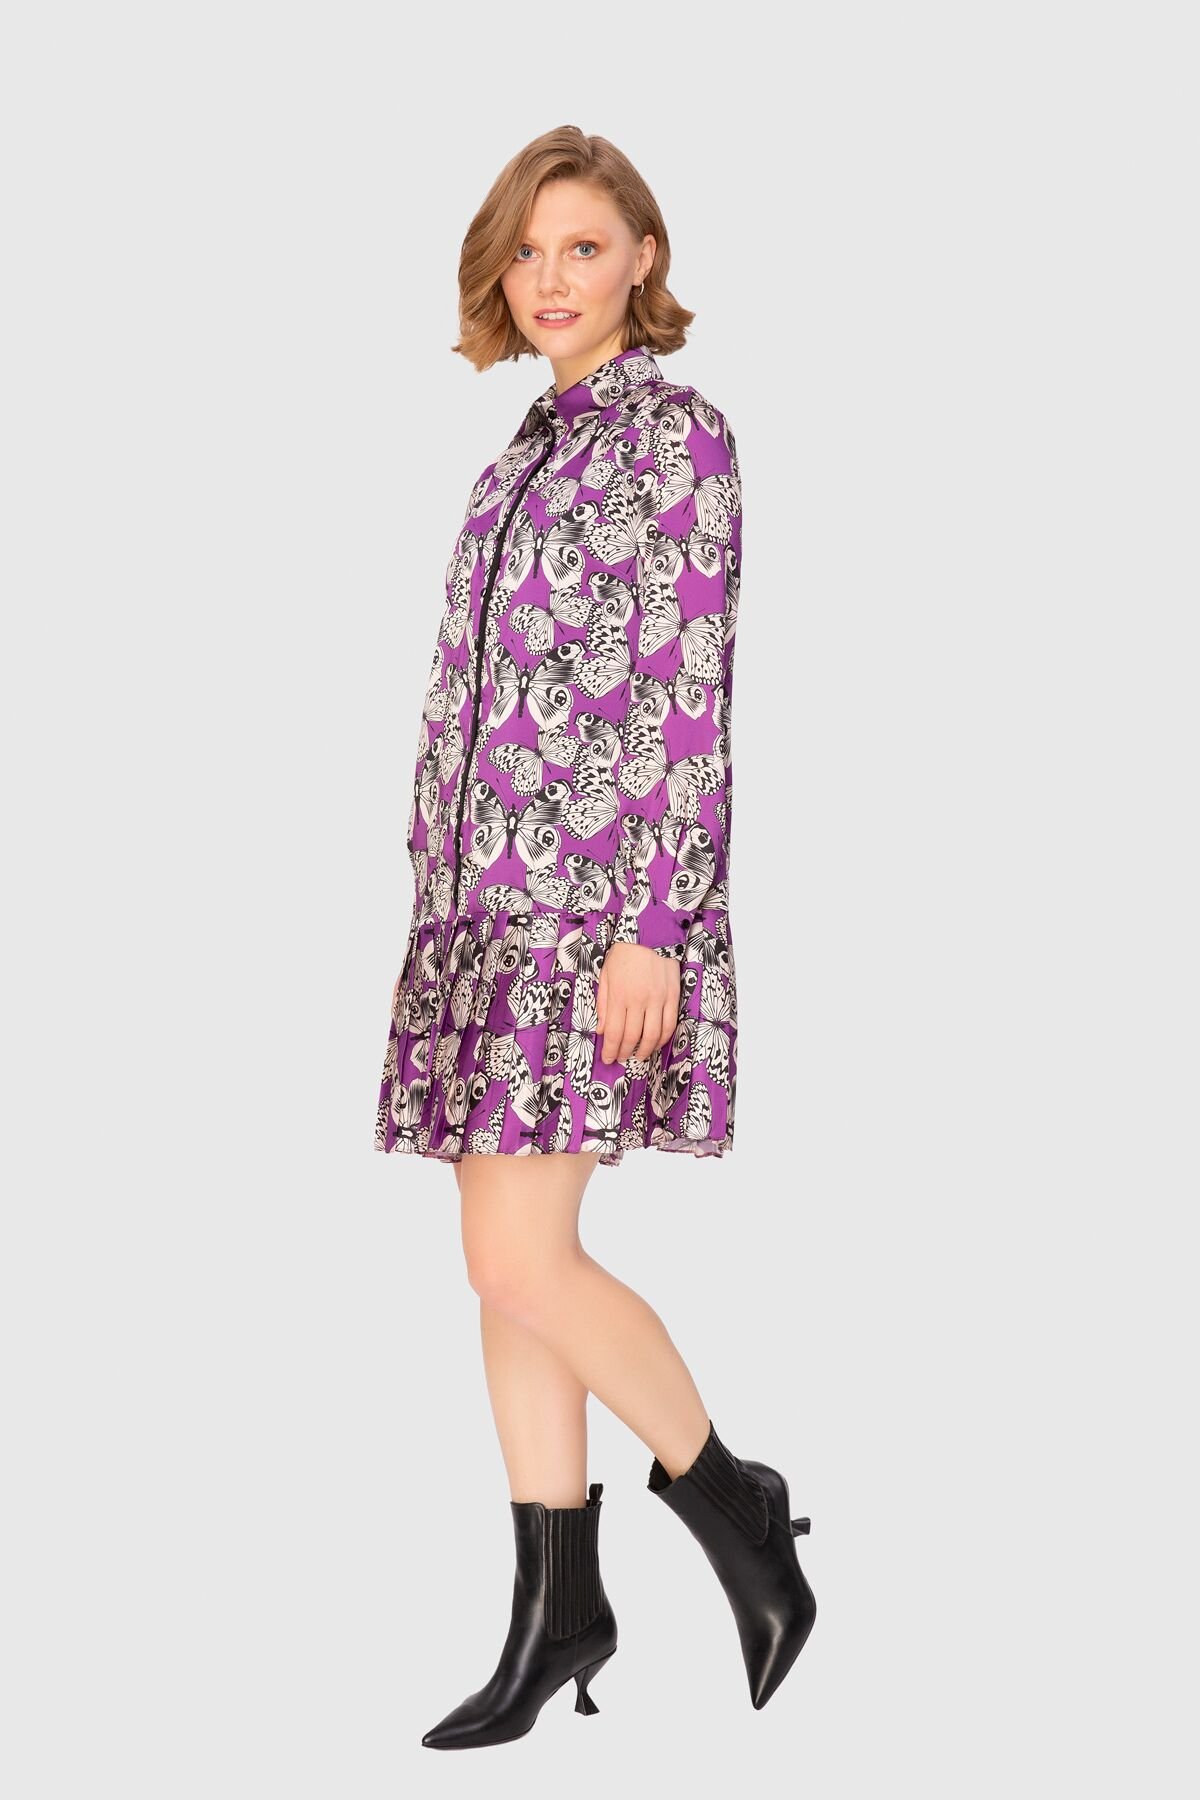 Patterned Pleated Mini Purple Dress